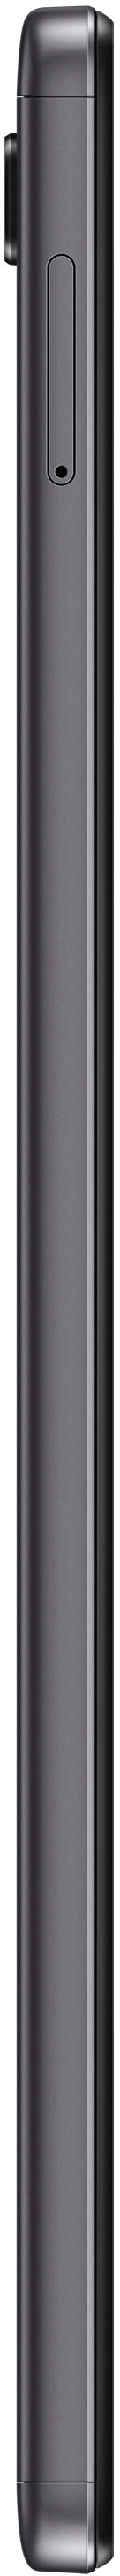 Samsung Galaxy Tab A7 Lite Best - Dark 32GB Gray SM-T220NZAAXAR 8.7\